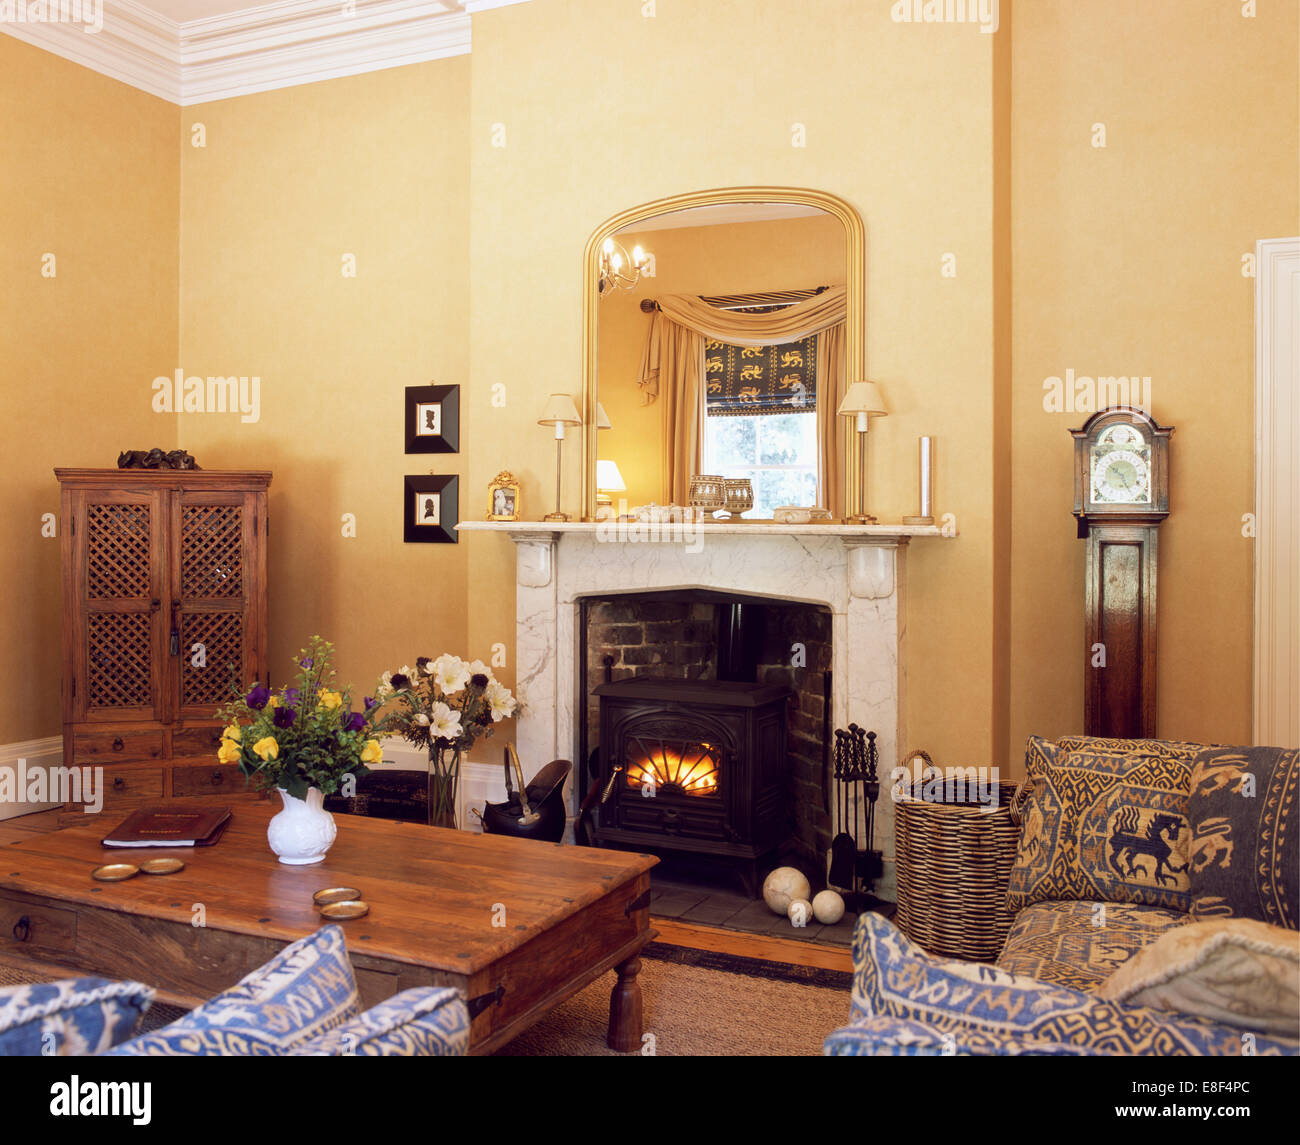 Miroir doré au-dessus de cheminée en marbre avec poêle à bois dans le pays de séjour avec table à café en bois indonésien Banque D'Images